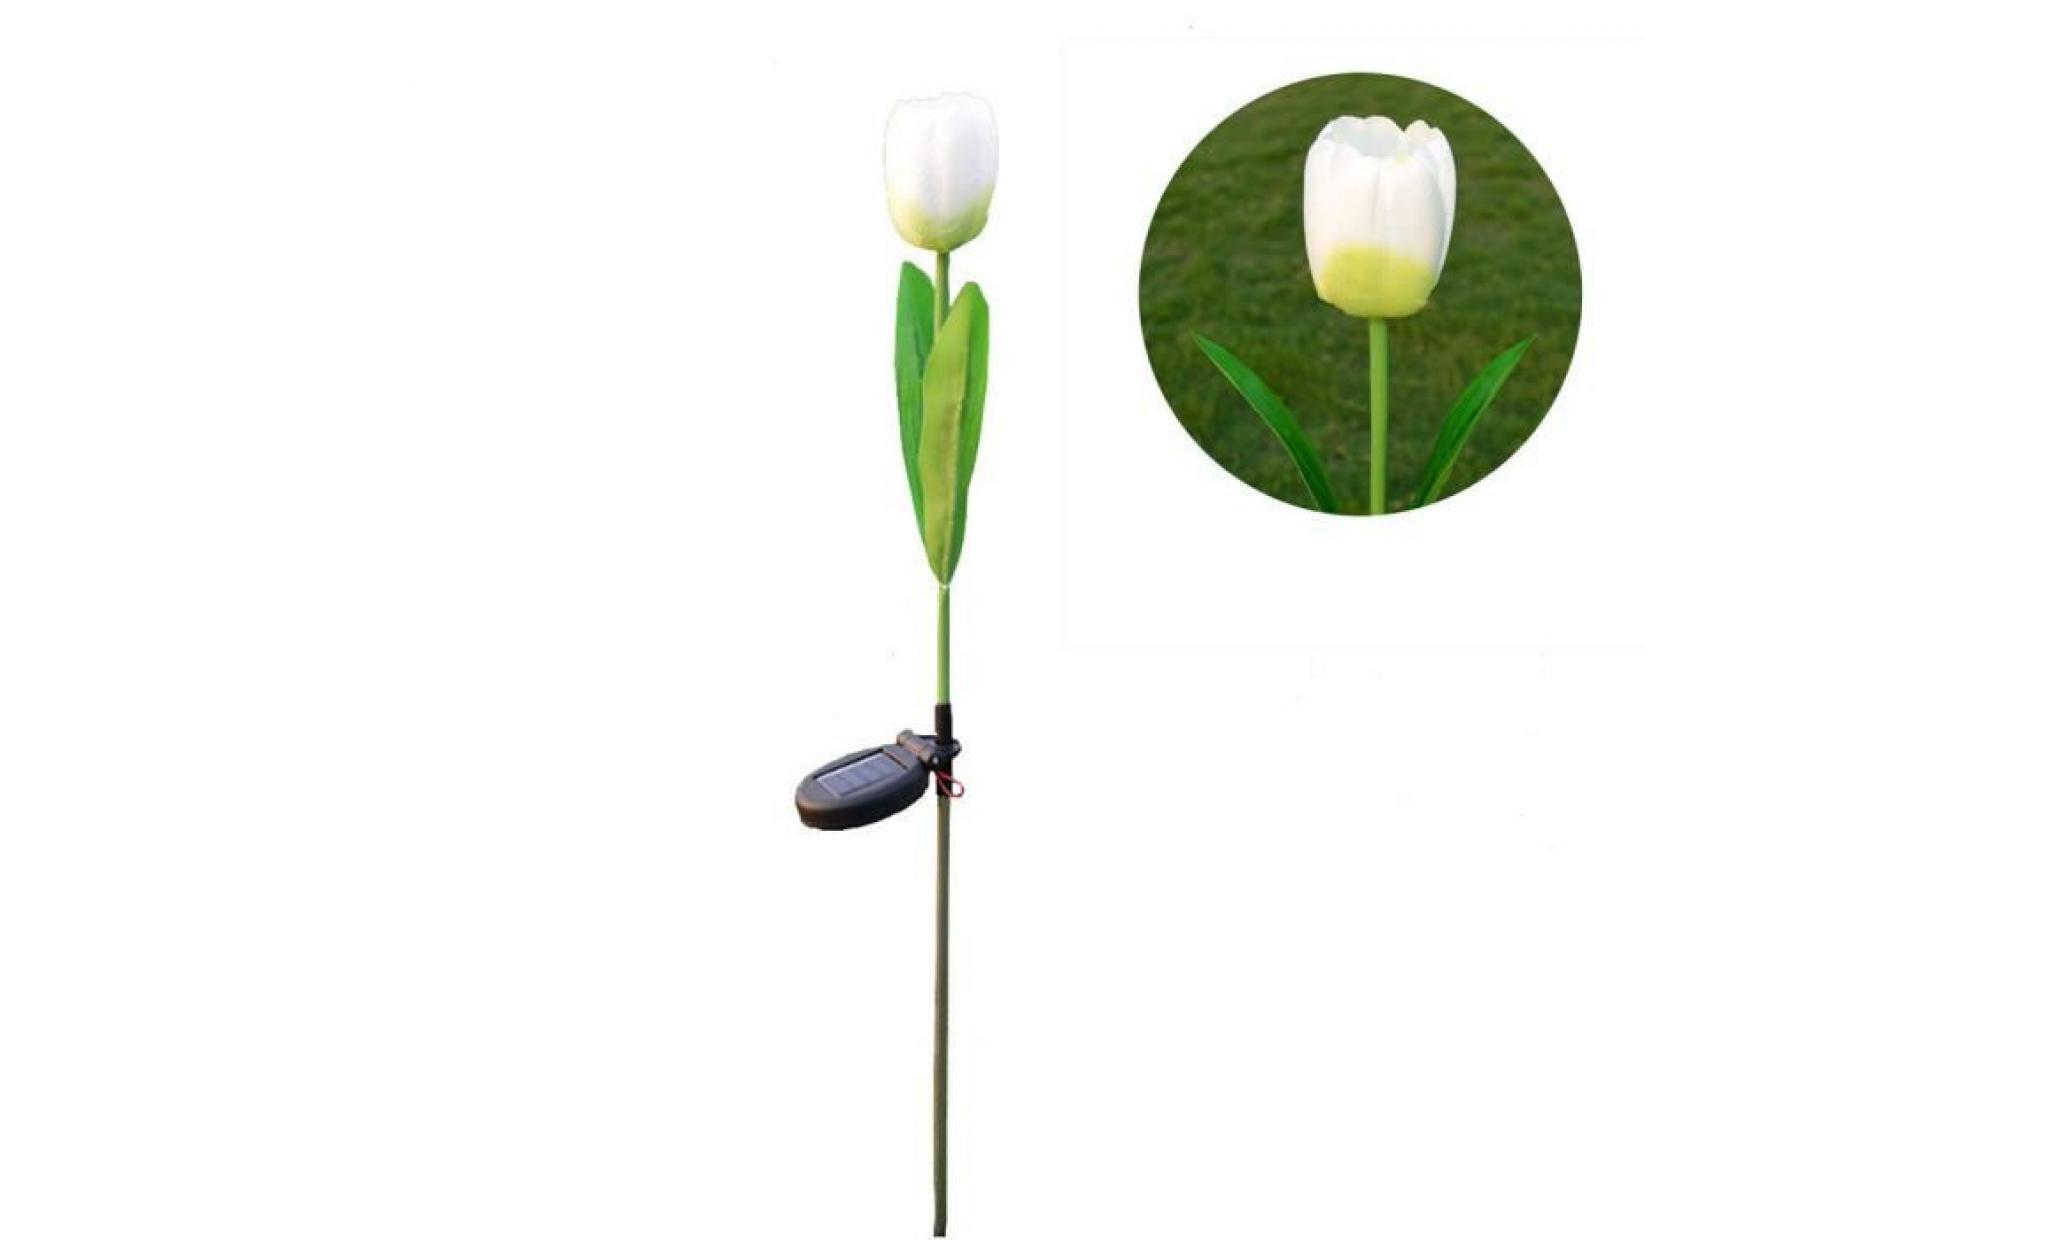 borne solaire 1 tête solaire led lampe décorative extérieure de pelouse 1 tête tulipe fleur lumière #la 117 pas cher